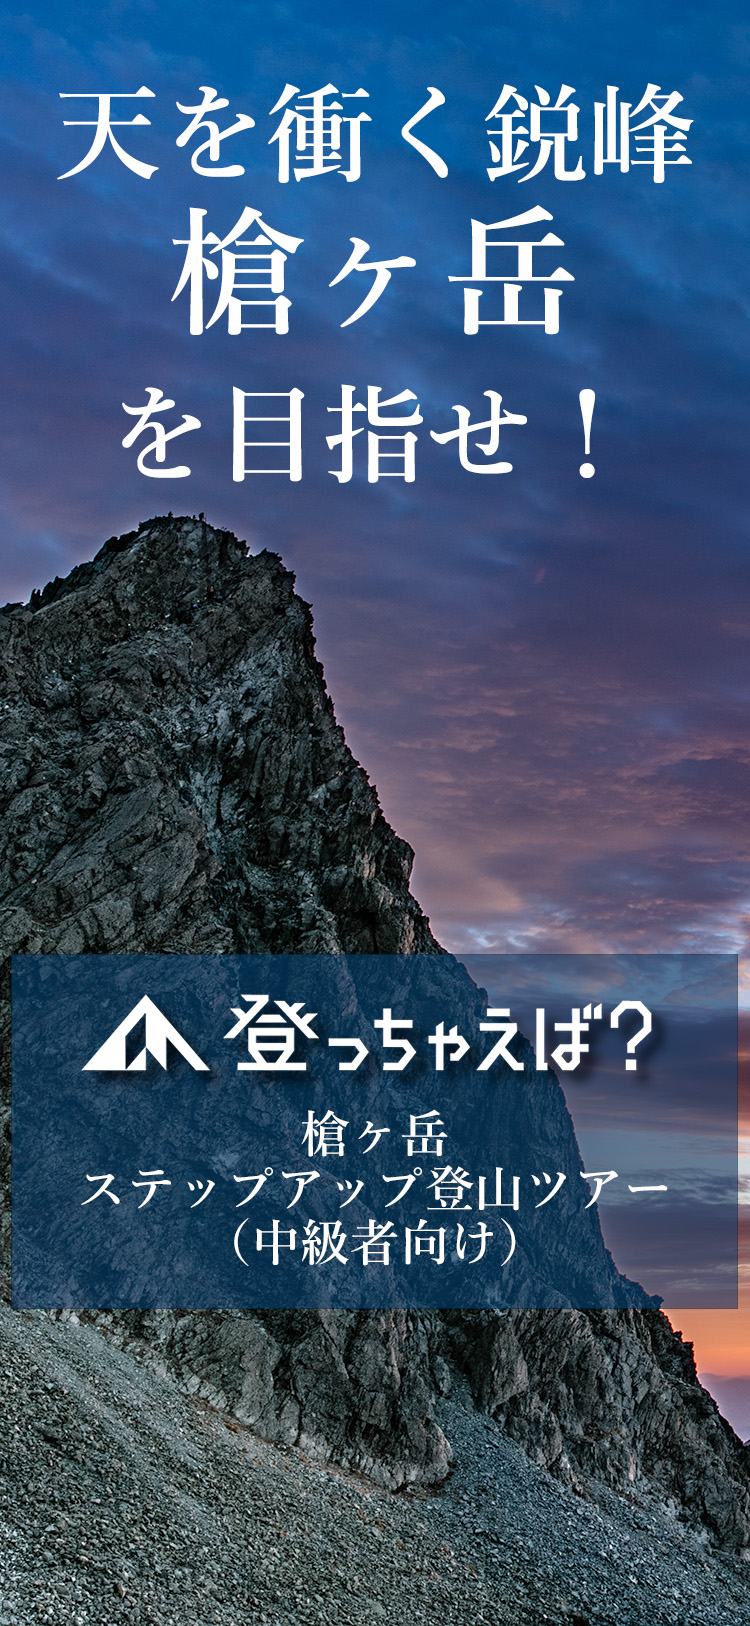 槍ヶ岳ステップアップ登山ツアー